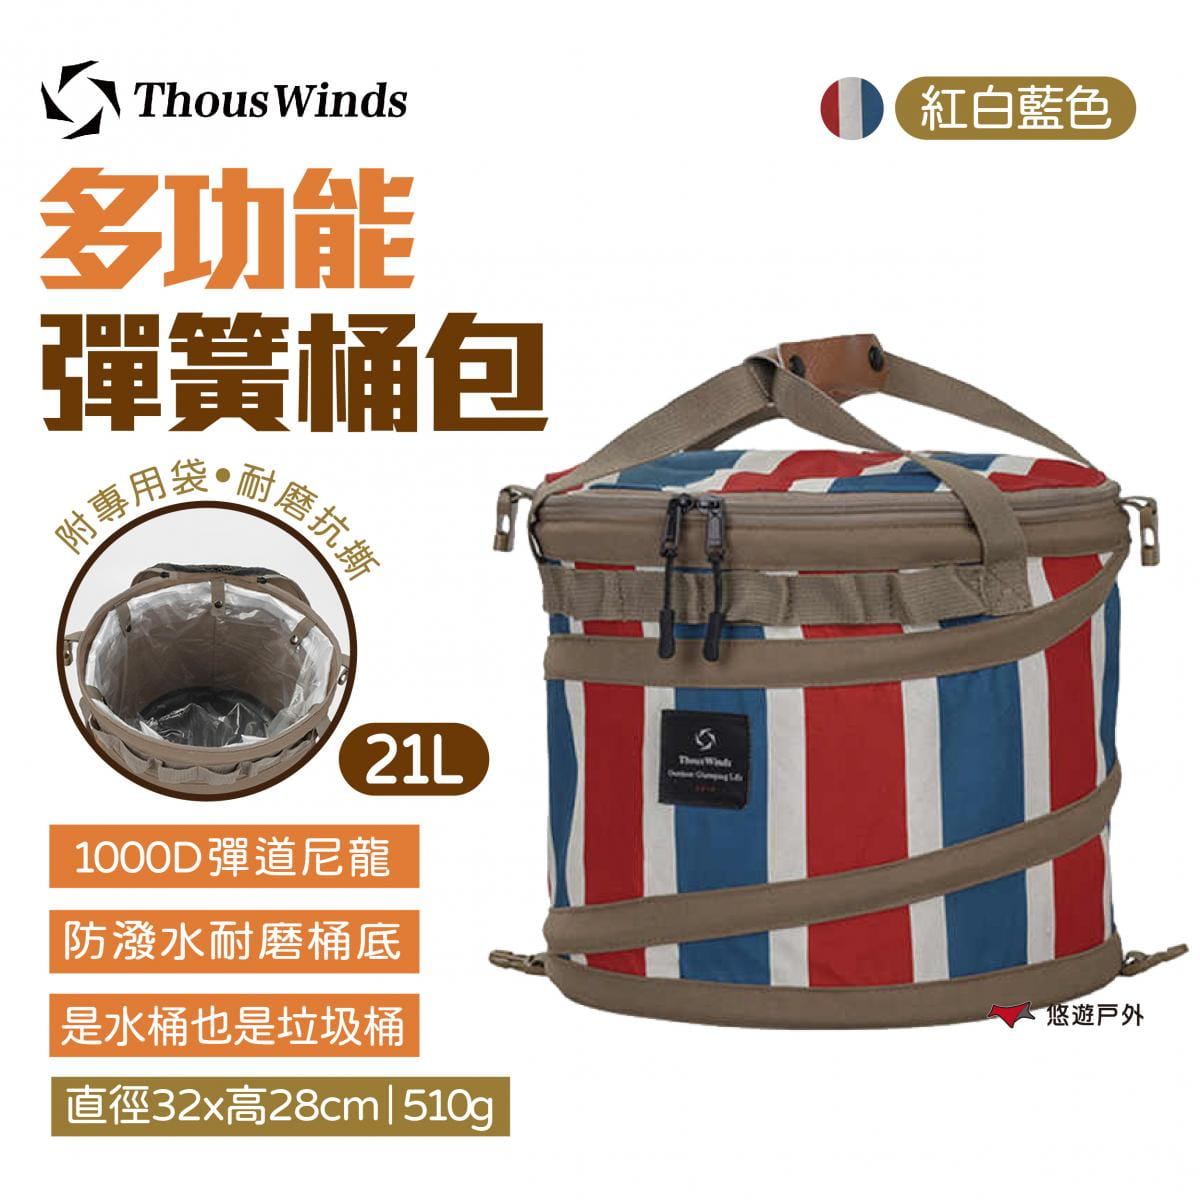 【Thous Winds】多功能彈簧桶包 TW7040-C 紅白藍款 (悠遊戶外) 0